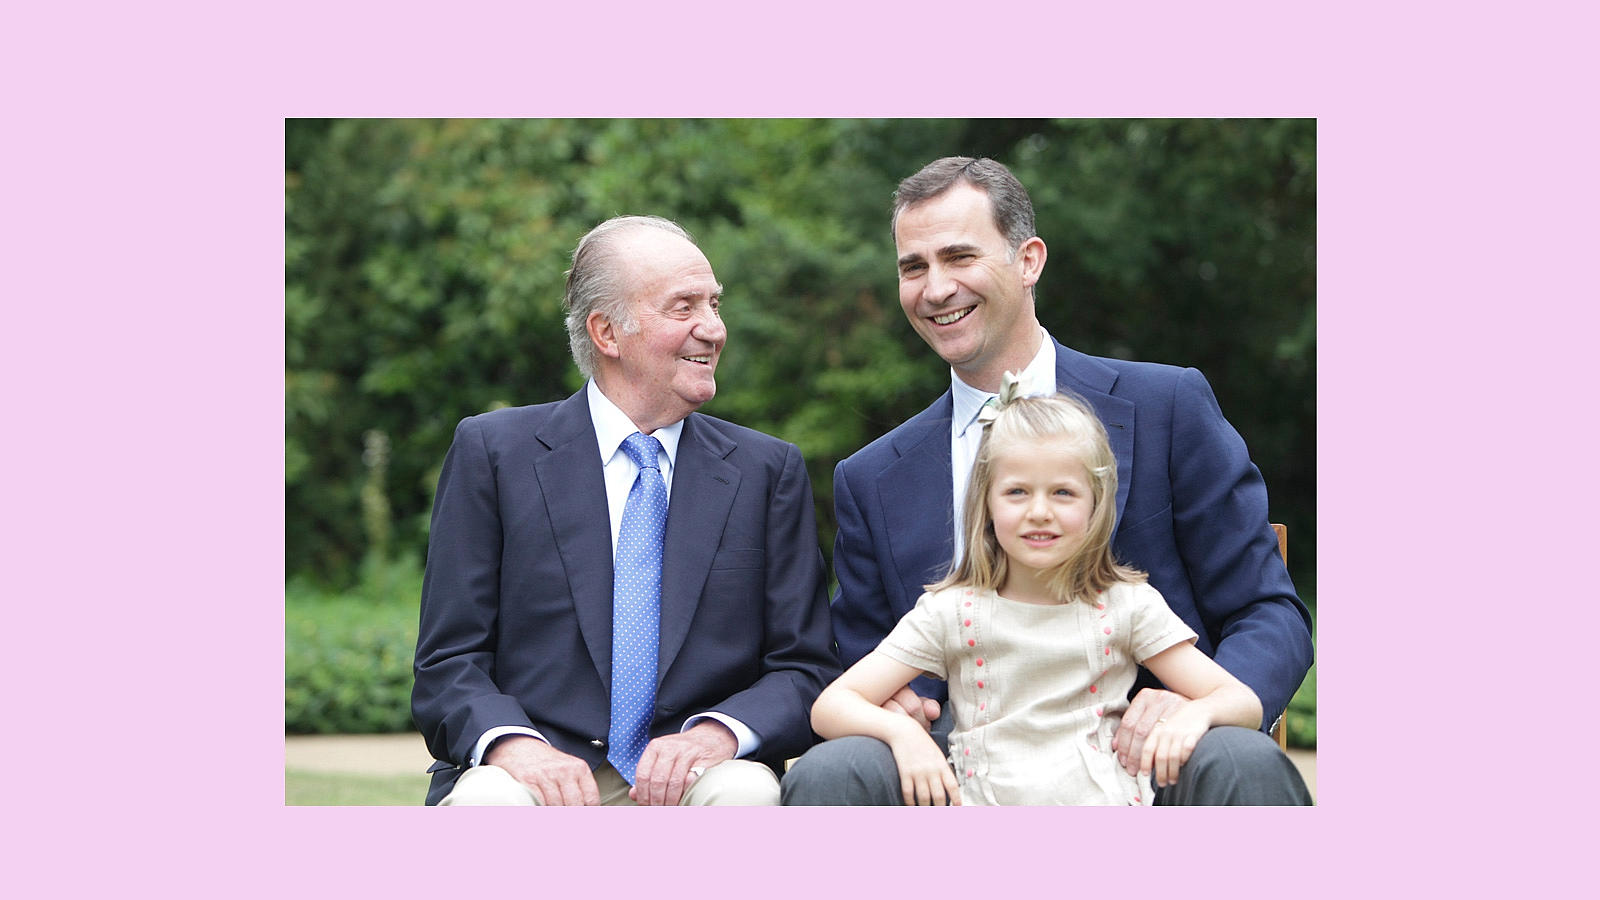 Tres generaciones unidas en esta foto oficial tomada en 2012 cuando Don Felipe aún no se había convertido en Rey acompañando a su padre Don Juan Carlos junto a su hija, la Princesa Leonor en el Palacio de la Zarzuela 